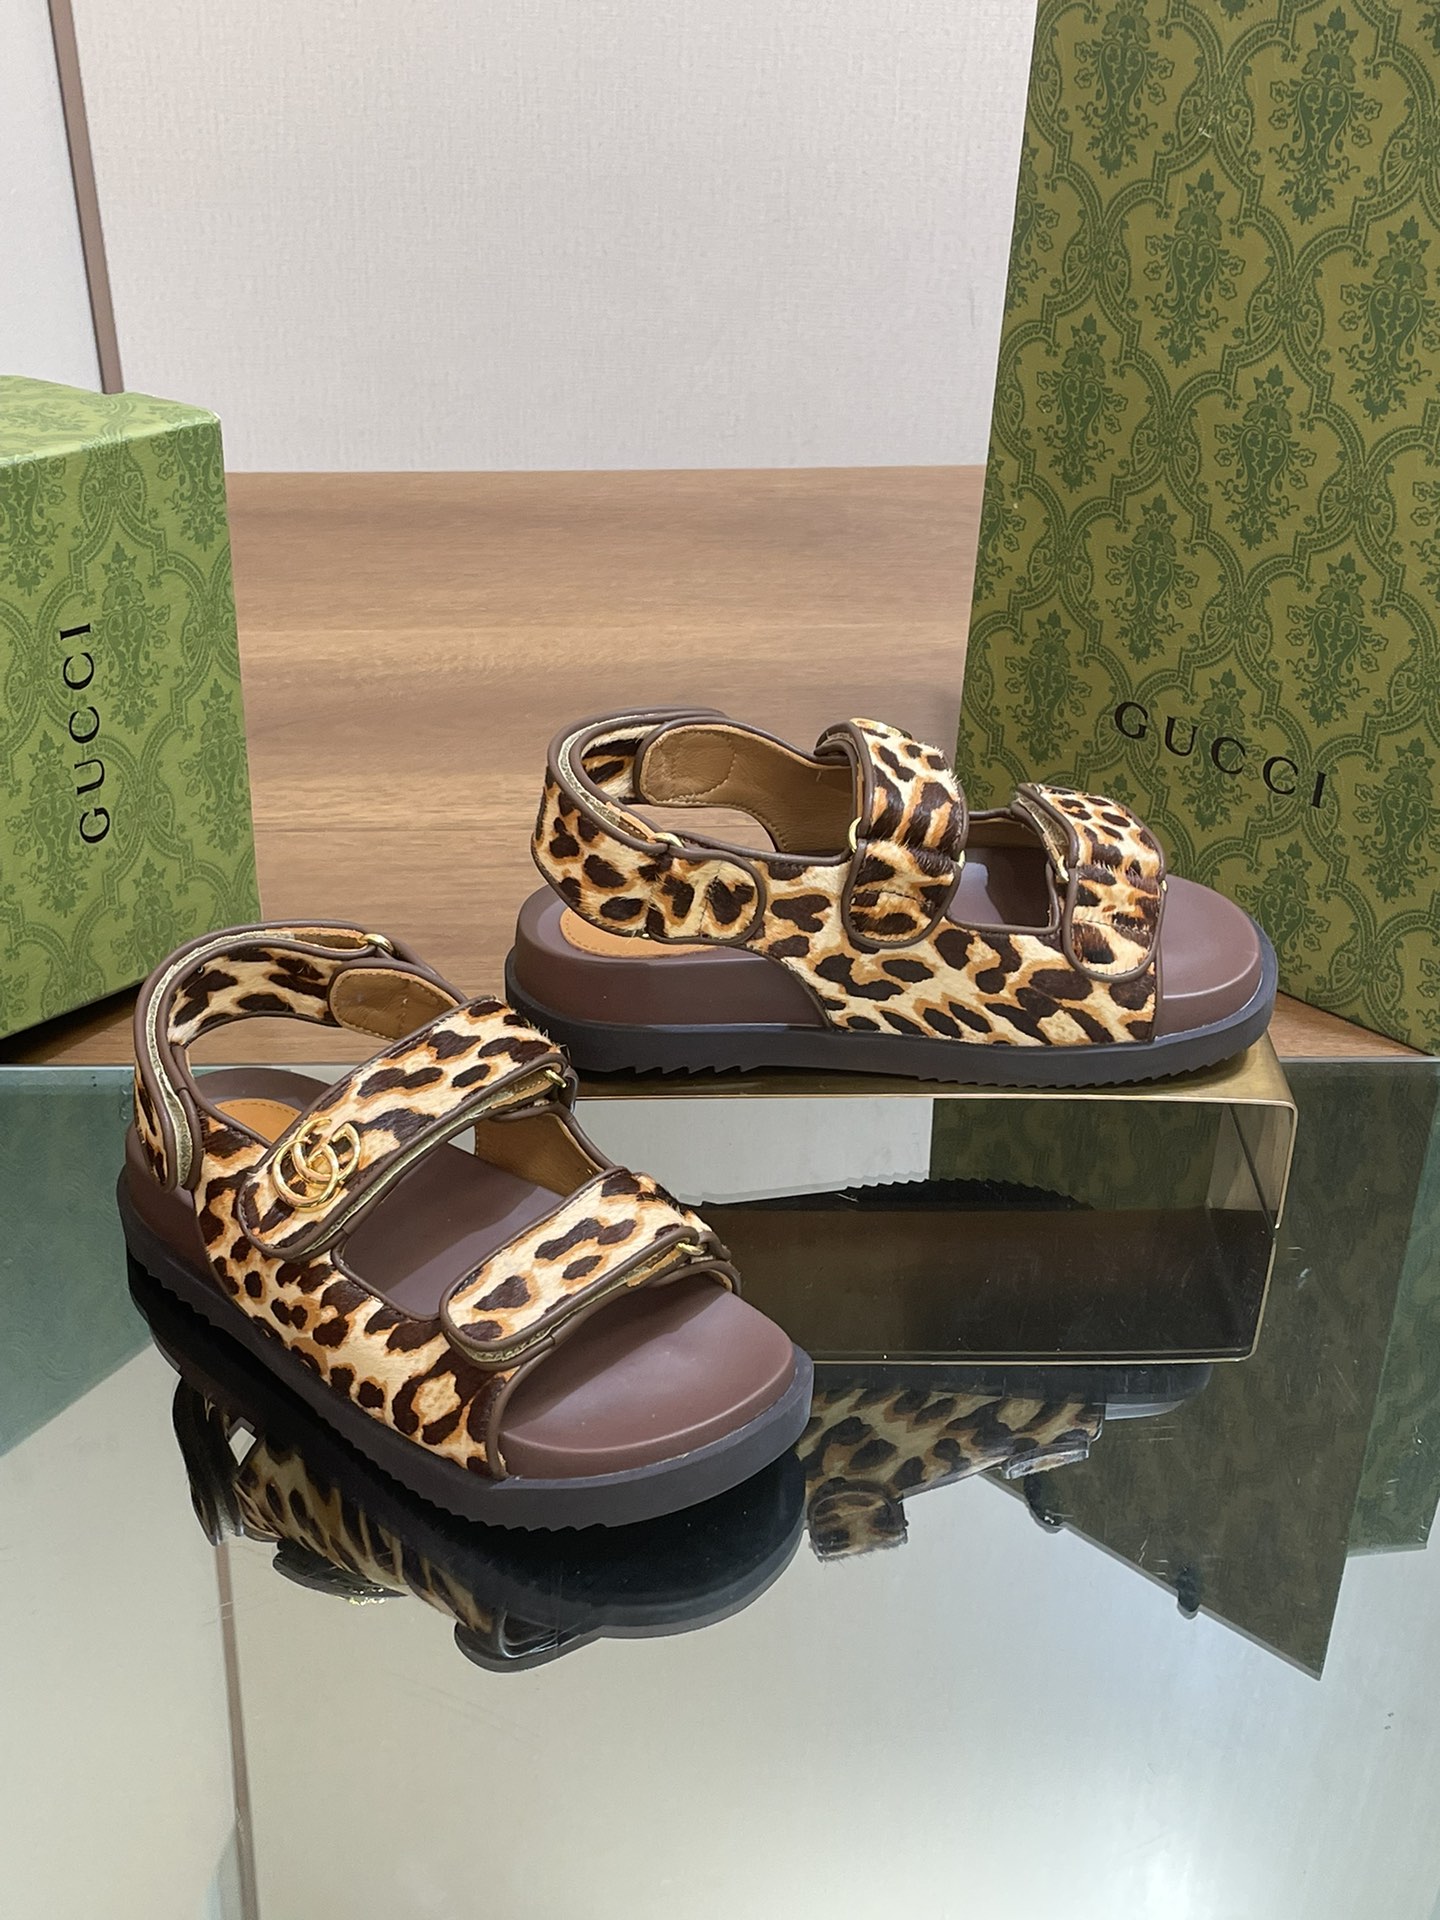 Stile und wo zu kaufen
 Gucci Schuhe Sandalen Grün Gewebe Spitze Kautschuk Schaffell Frühlingskollektion Strand